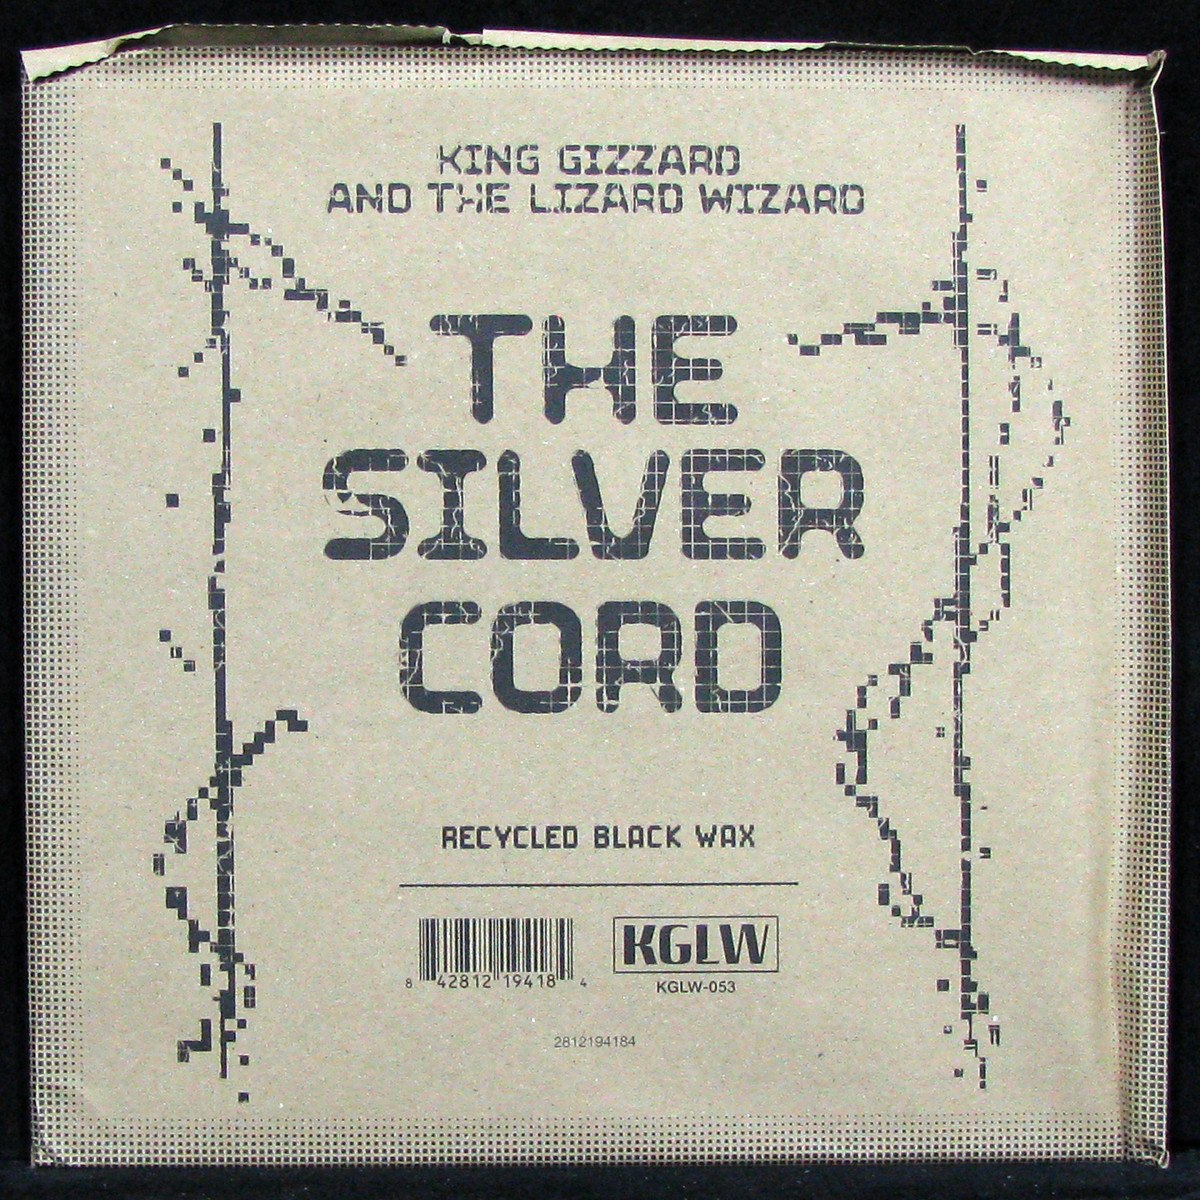 Silver Cord